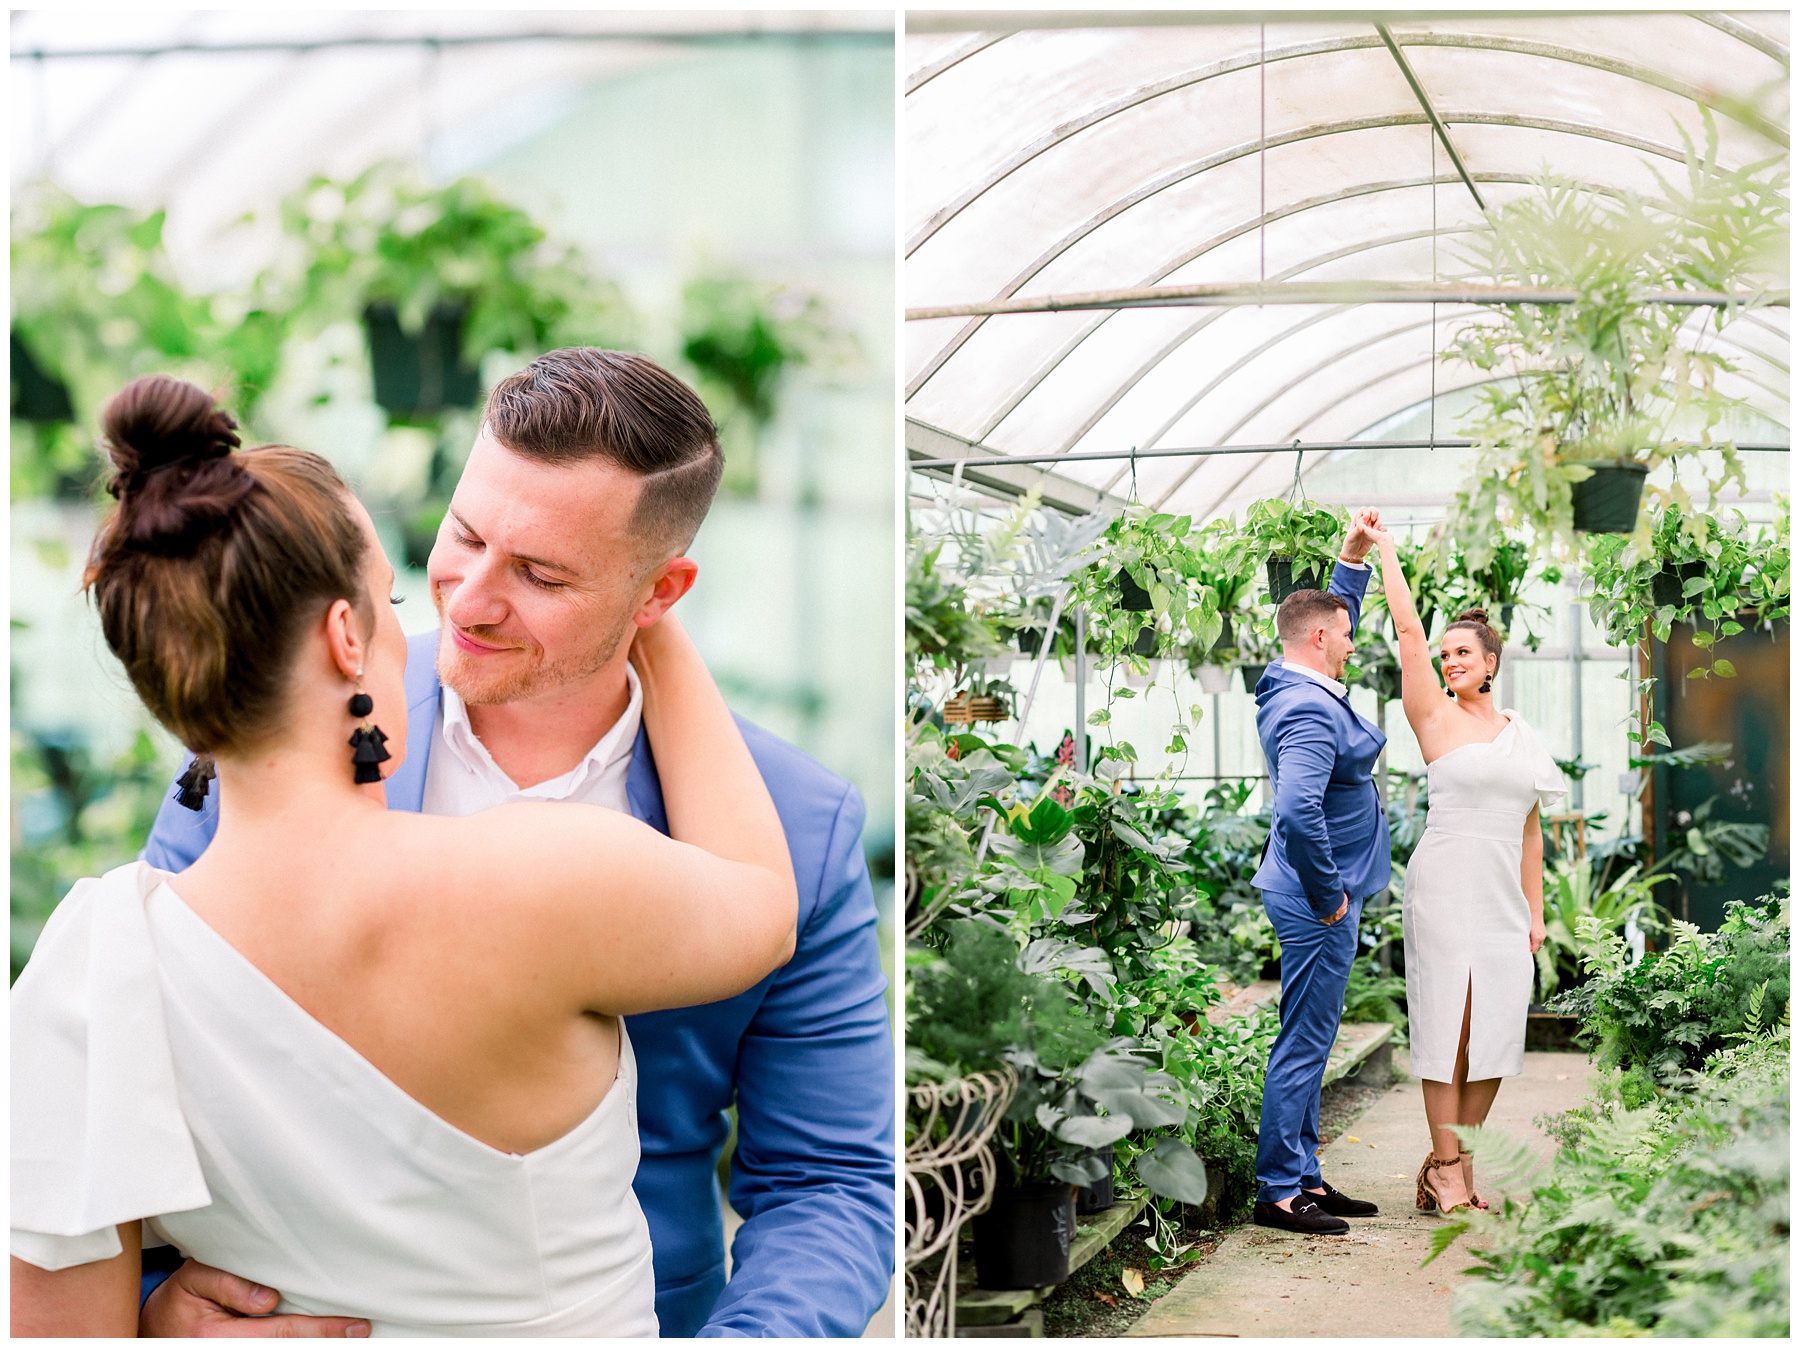 Big Greenhouse Newlywed Session. Columbus Ohio Wedding Photographer